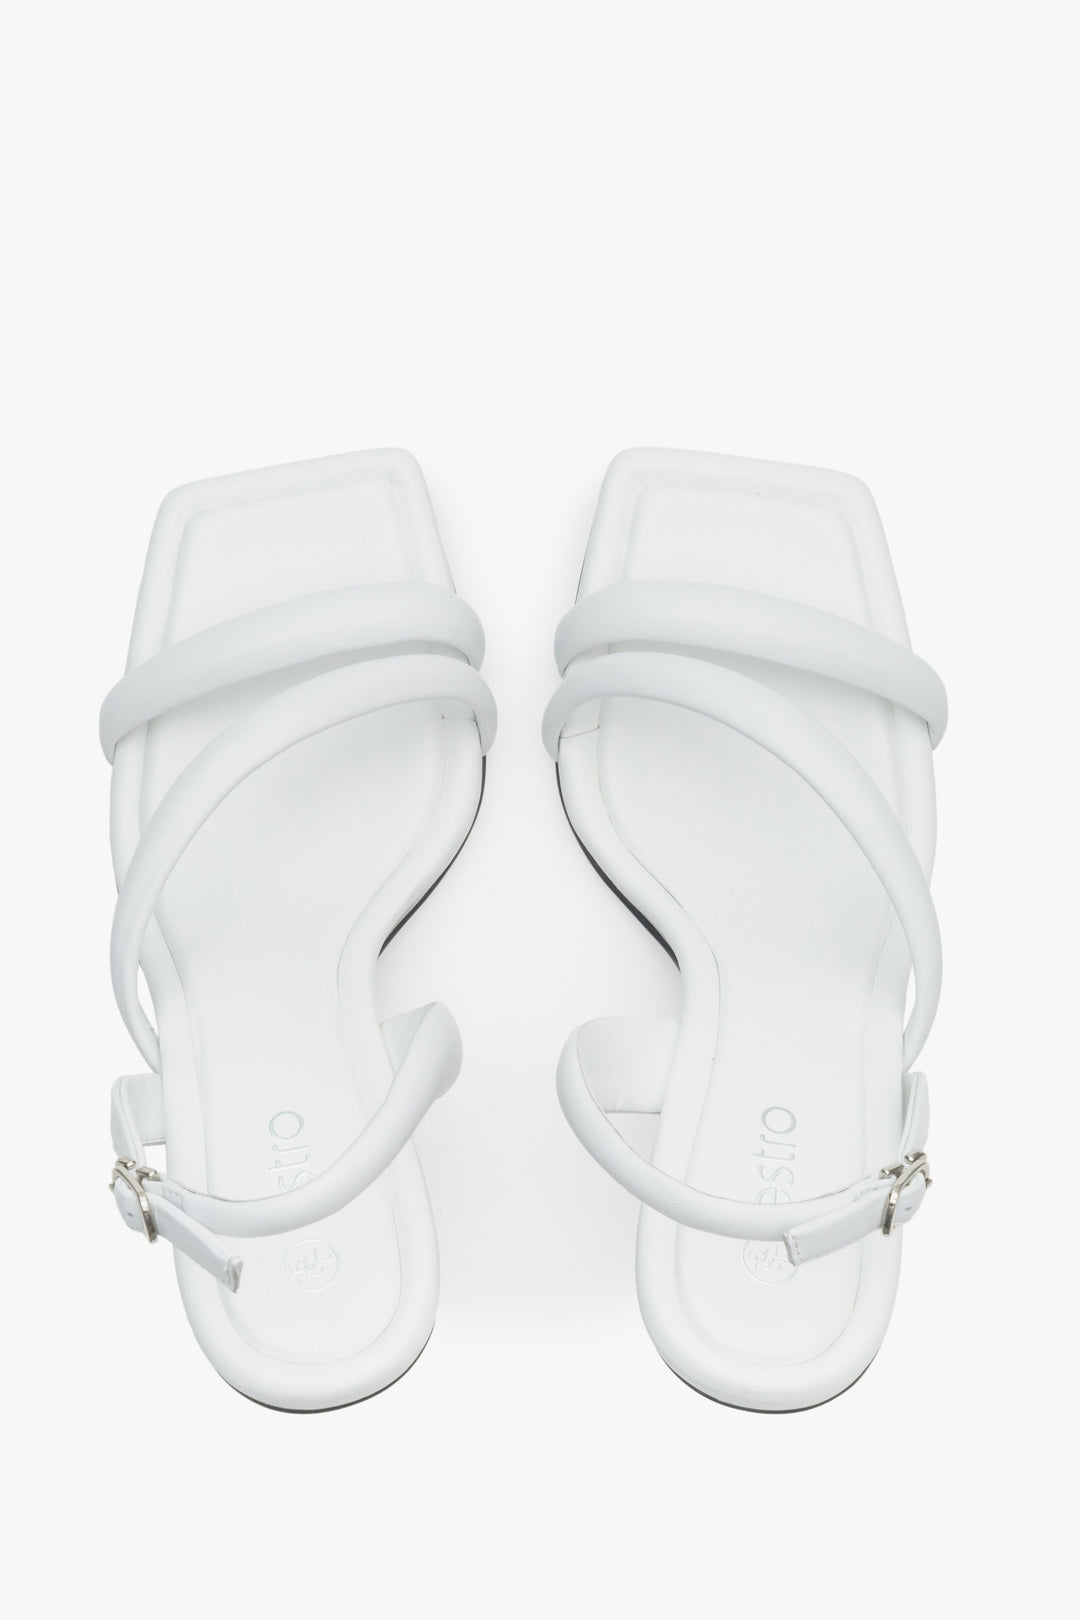 Skórzane, białe sandały damskie z cienkich pasków na wysokim obcasie - prezentacja modelu z góry.